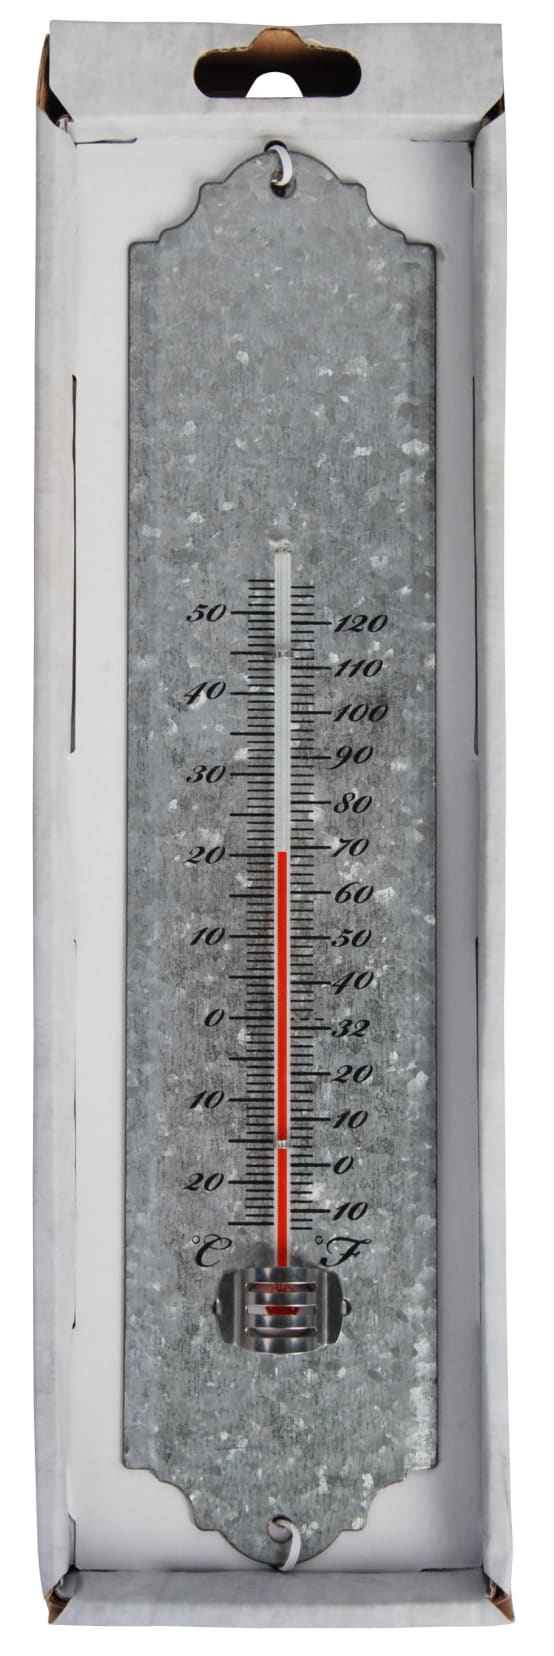 JOPHEK Thermometre Interieur Maison, 3 Pièces Mini LCD Thermomètre